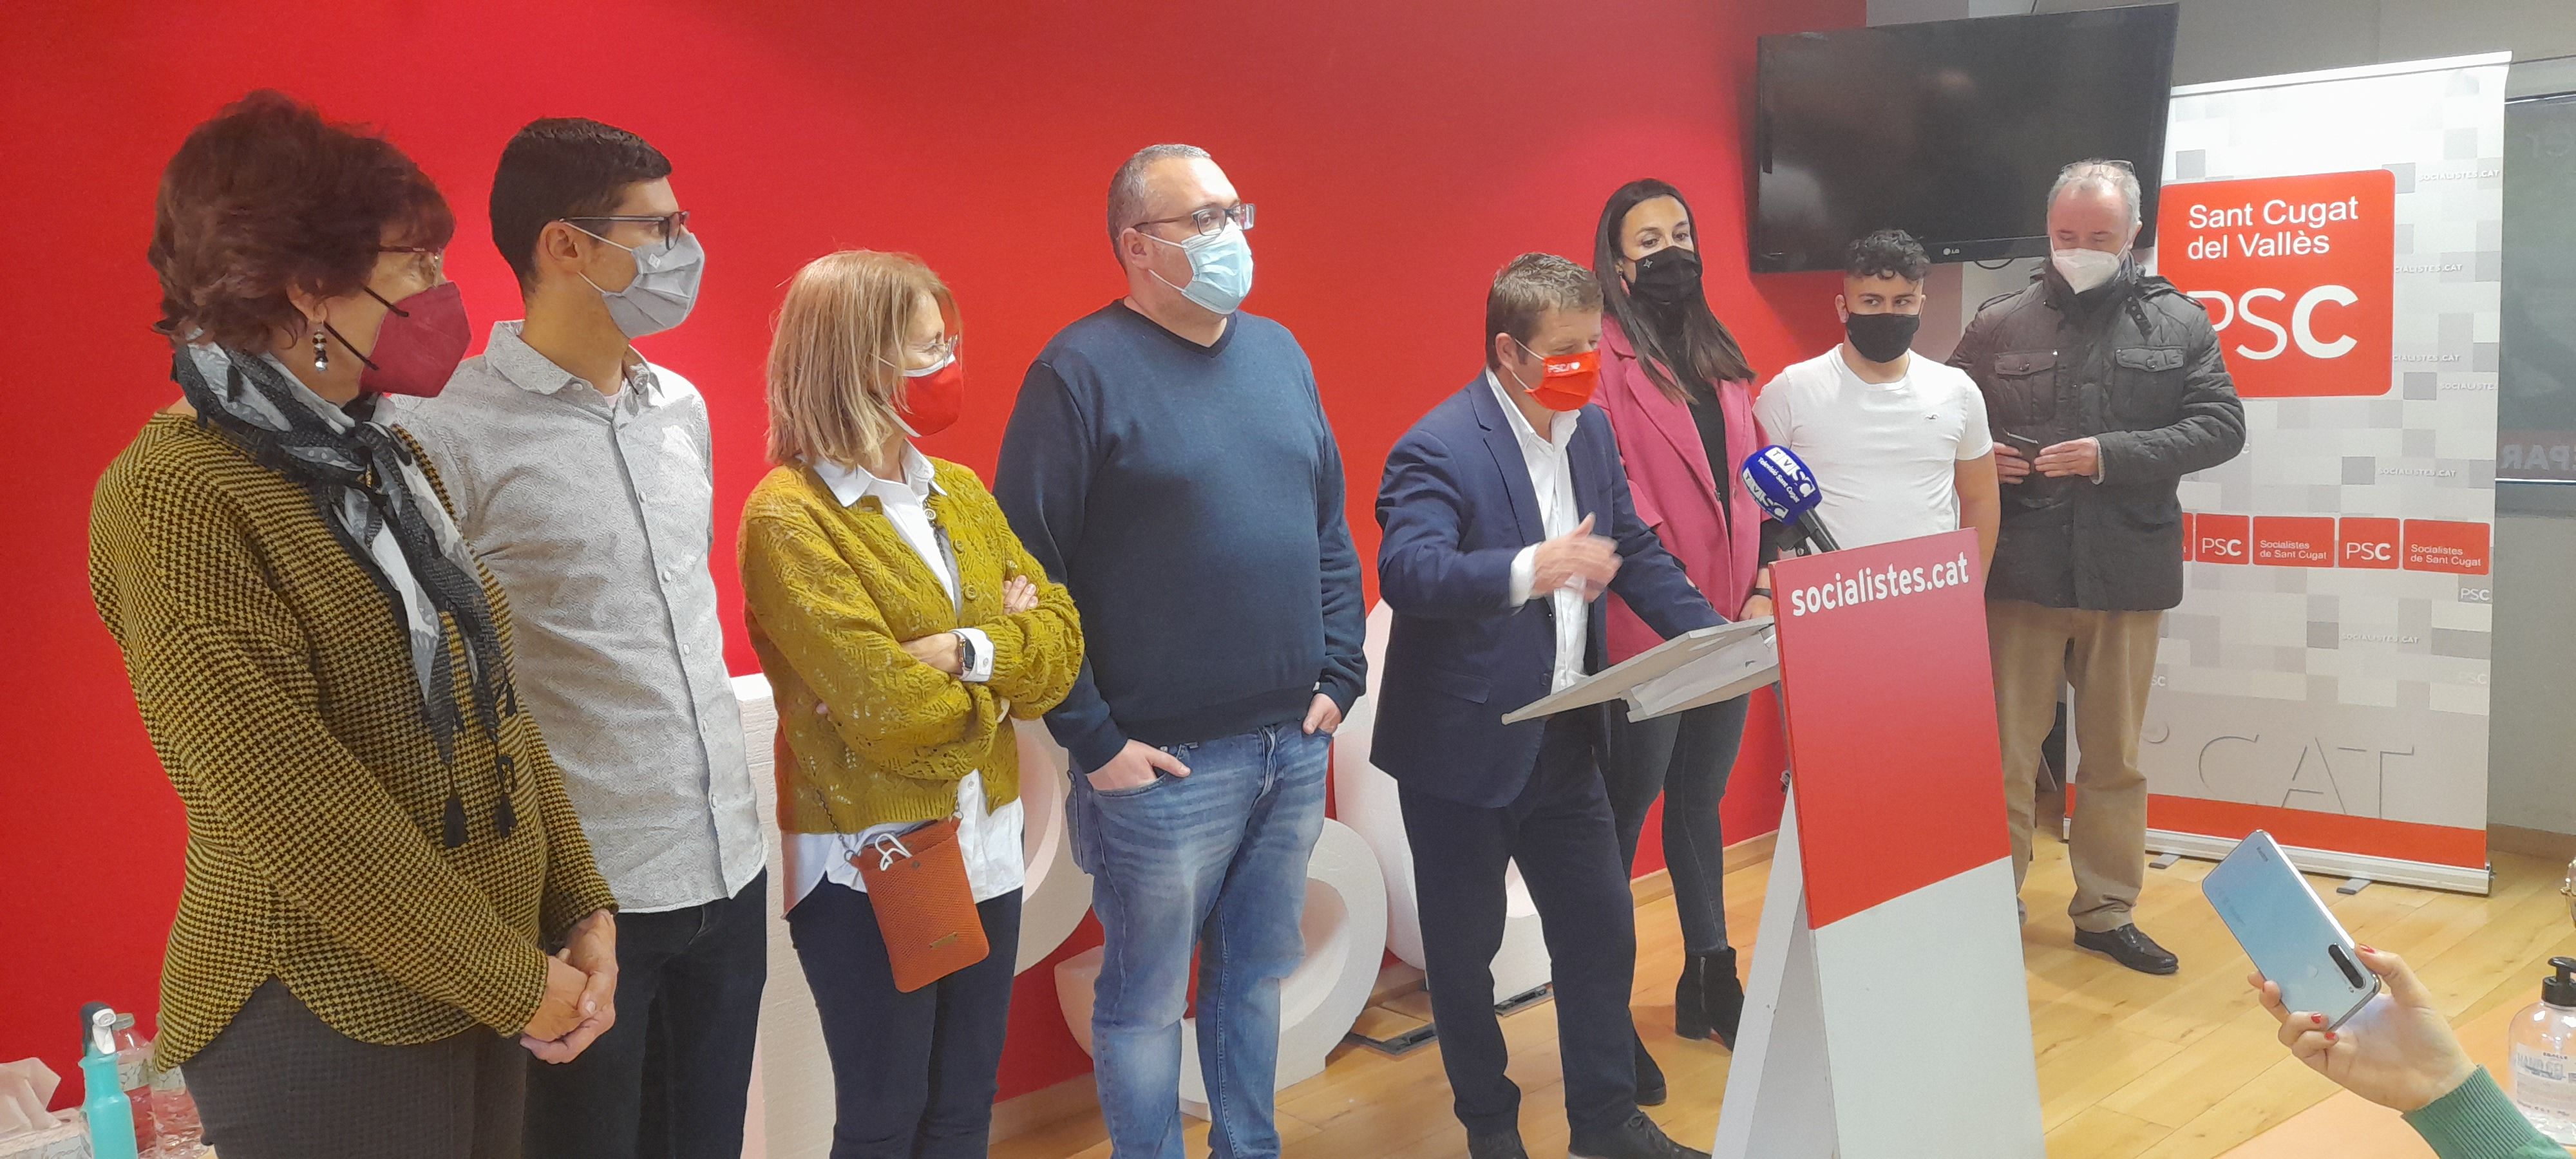 Representants del Partit Socialista de Catalunya a la roda de premsa. FOTO: Cristina Cabasés